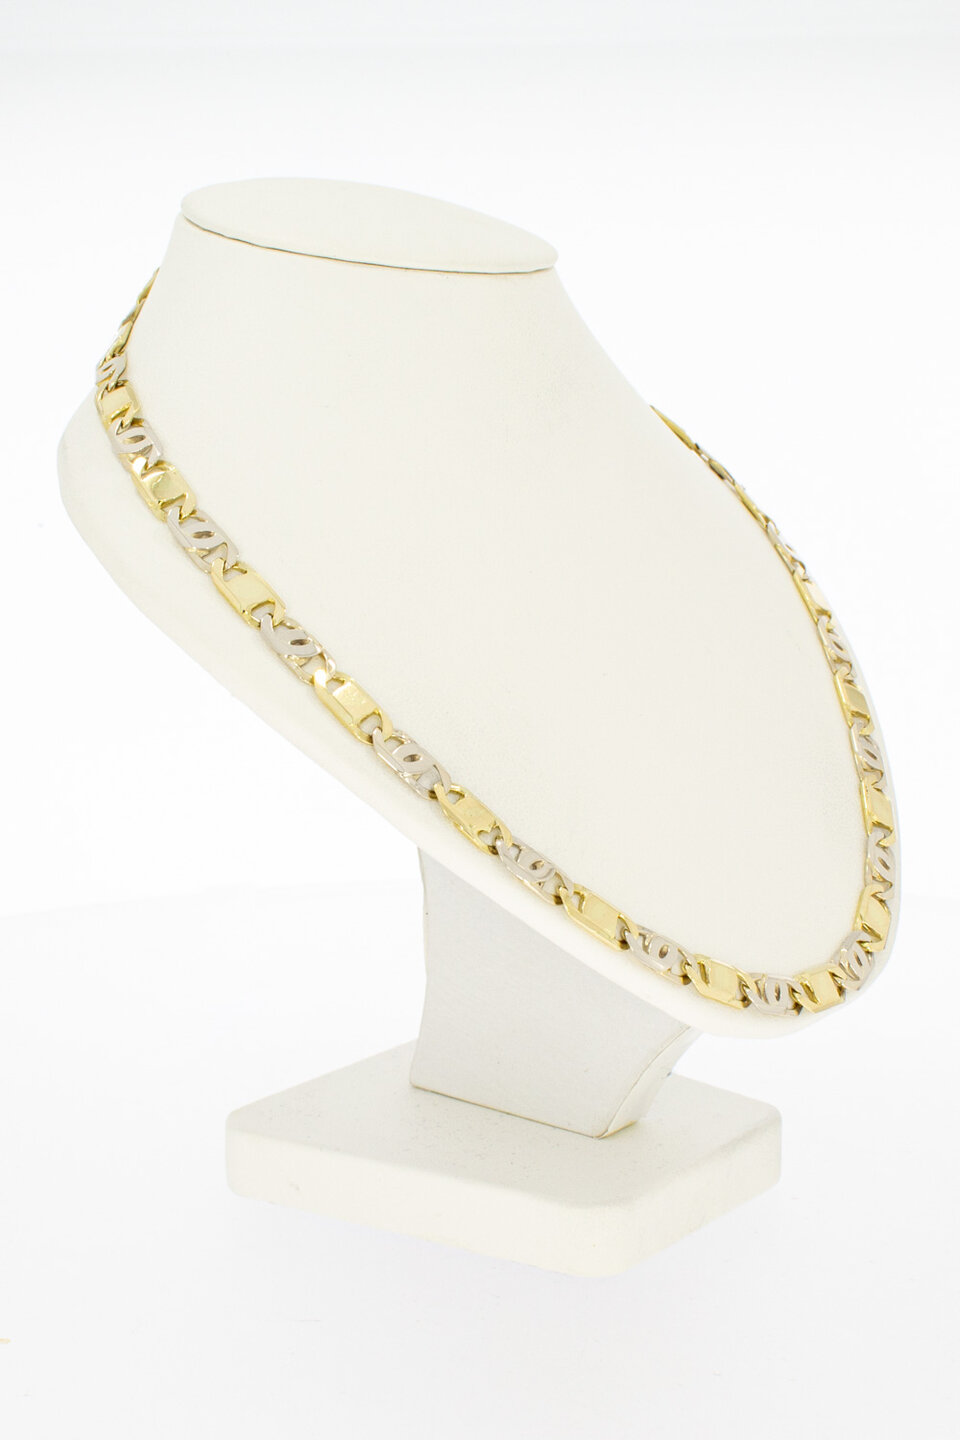 Falkenauge Halskette 18 Karat Gold - 54 cm